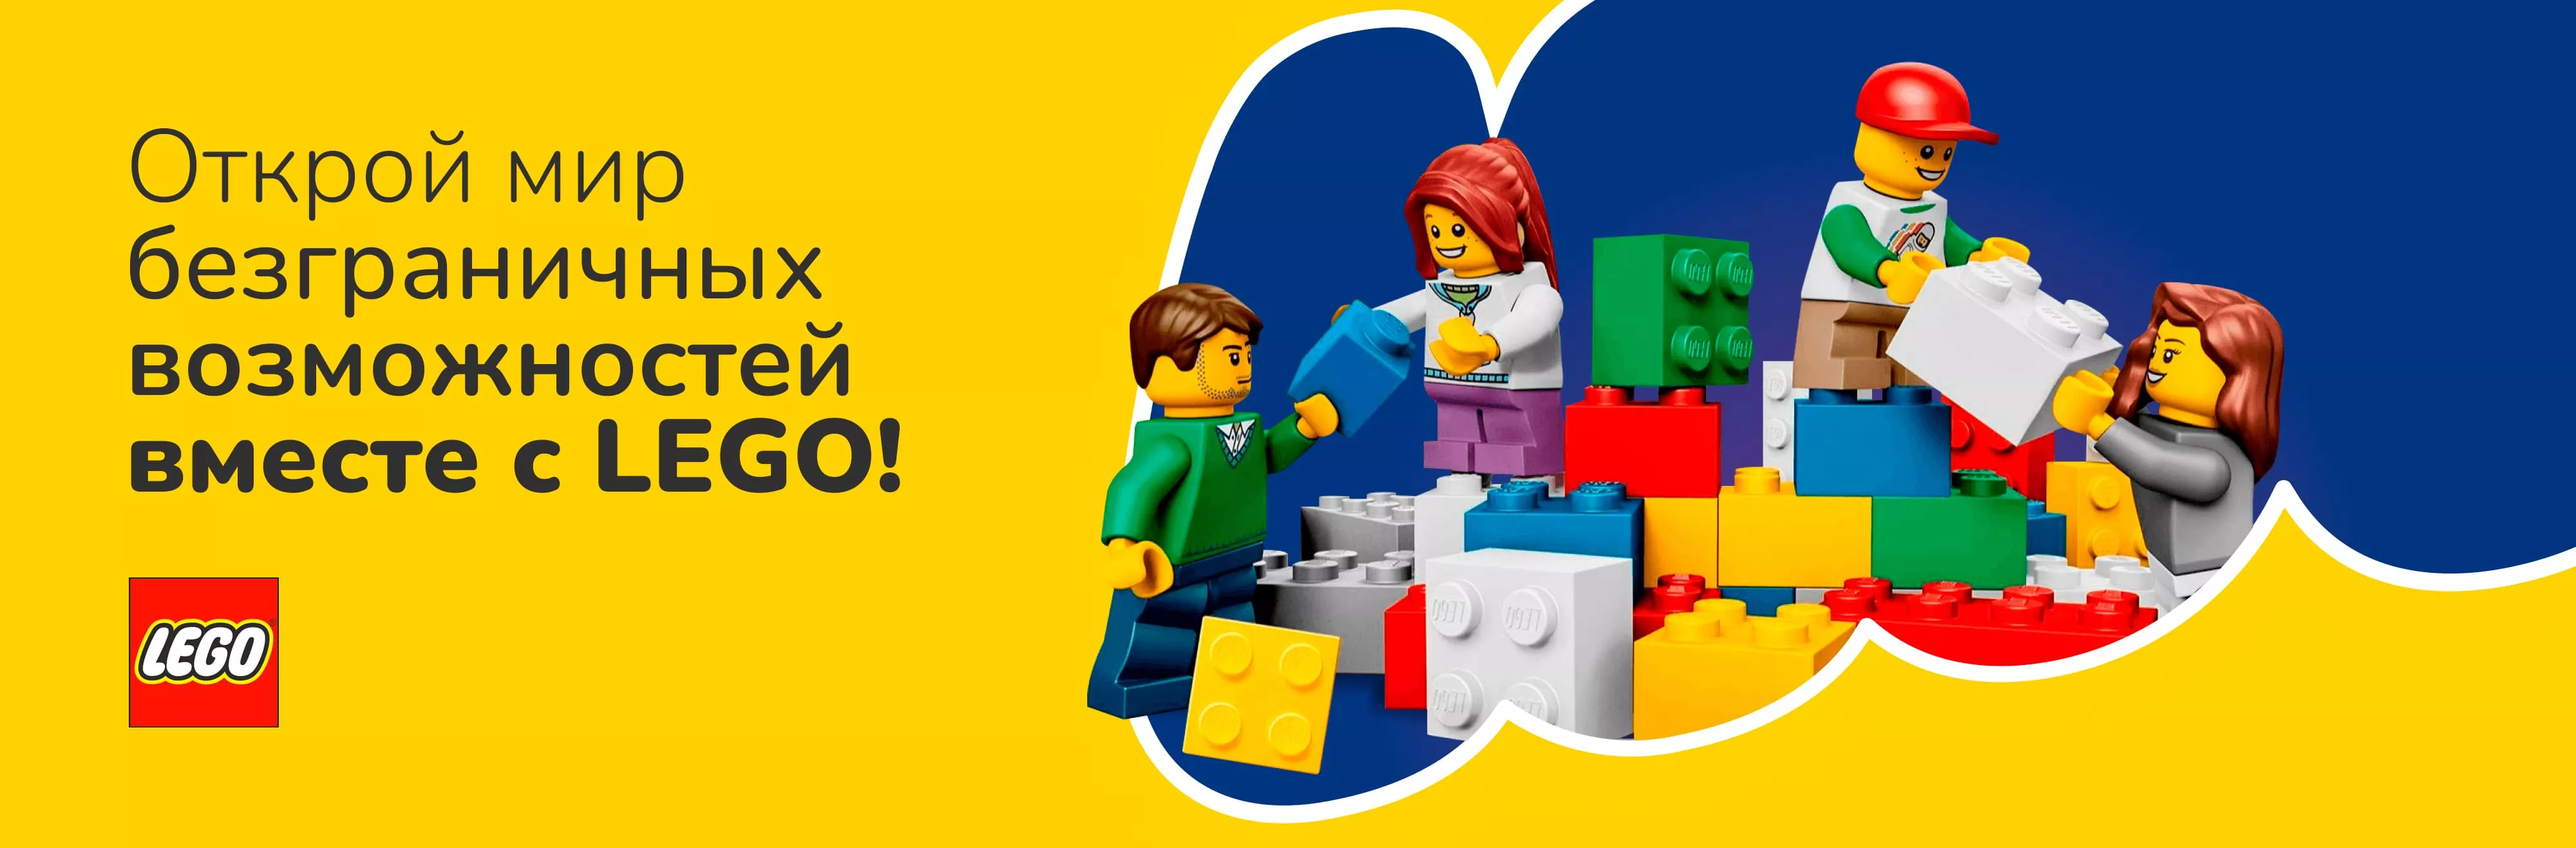 легмир lego лего купить заказать фирменный магазин интернет магазин продажа игрушки доставка legmir